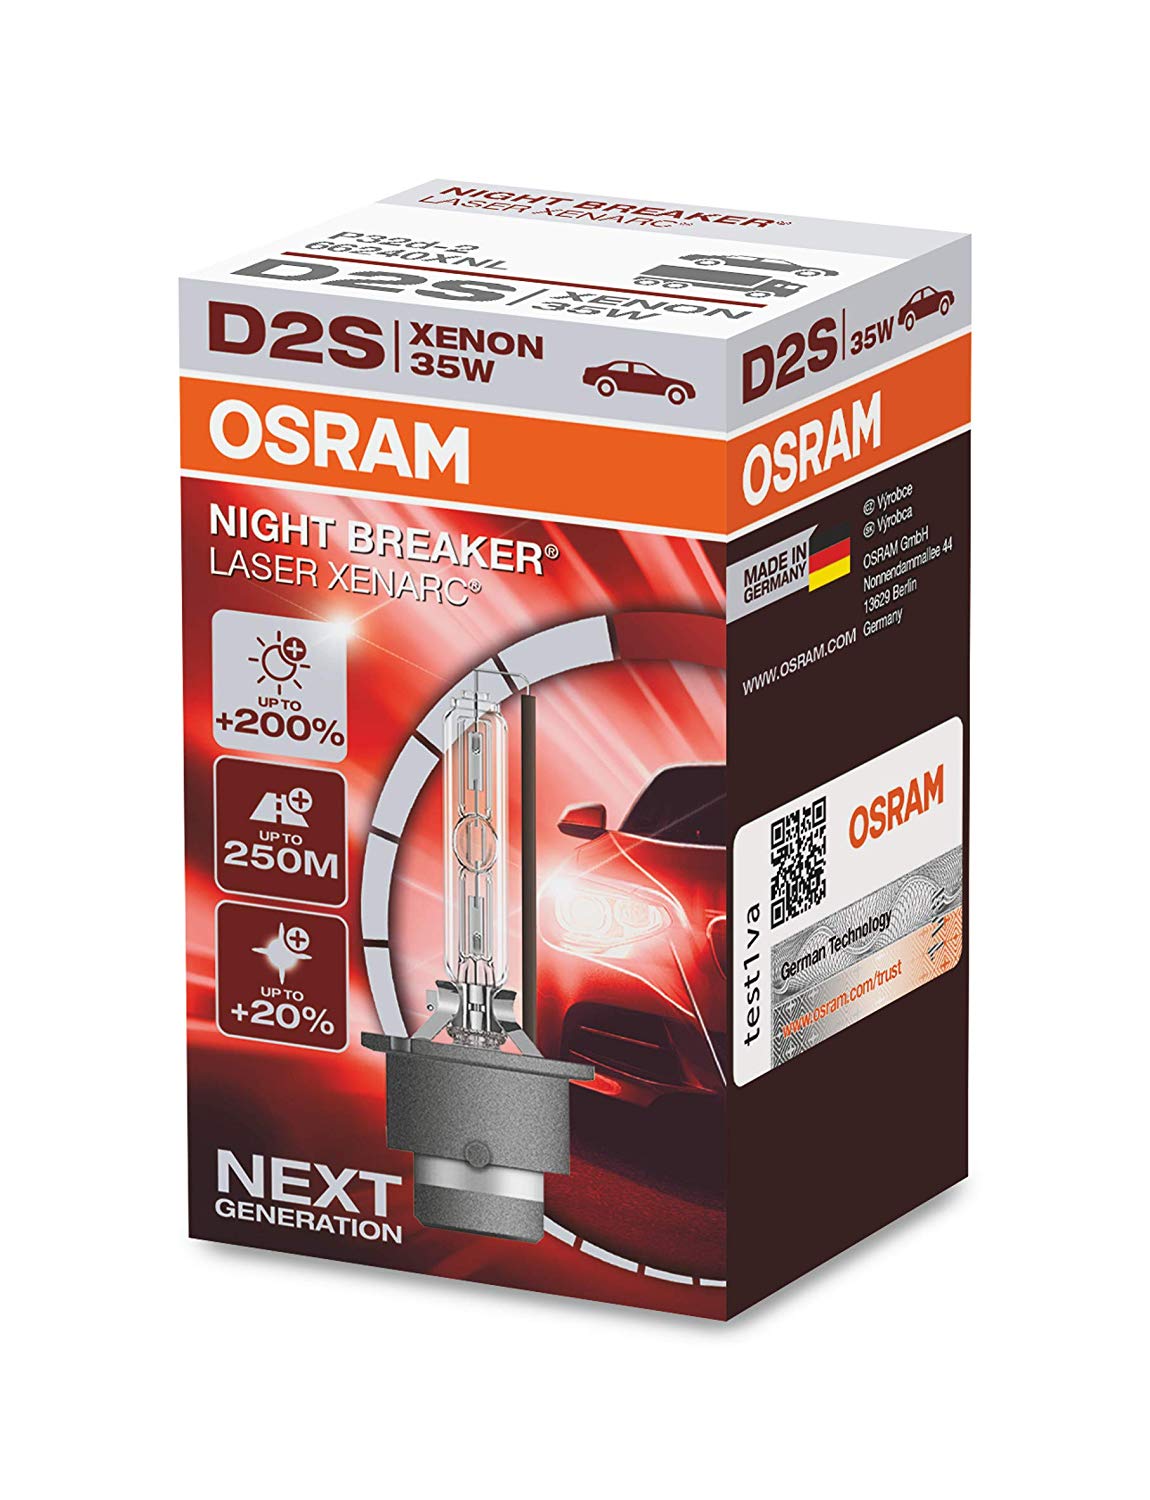 Osram D2S Night Breaker Laser Xenarc +200%